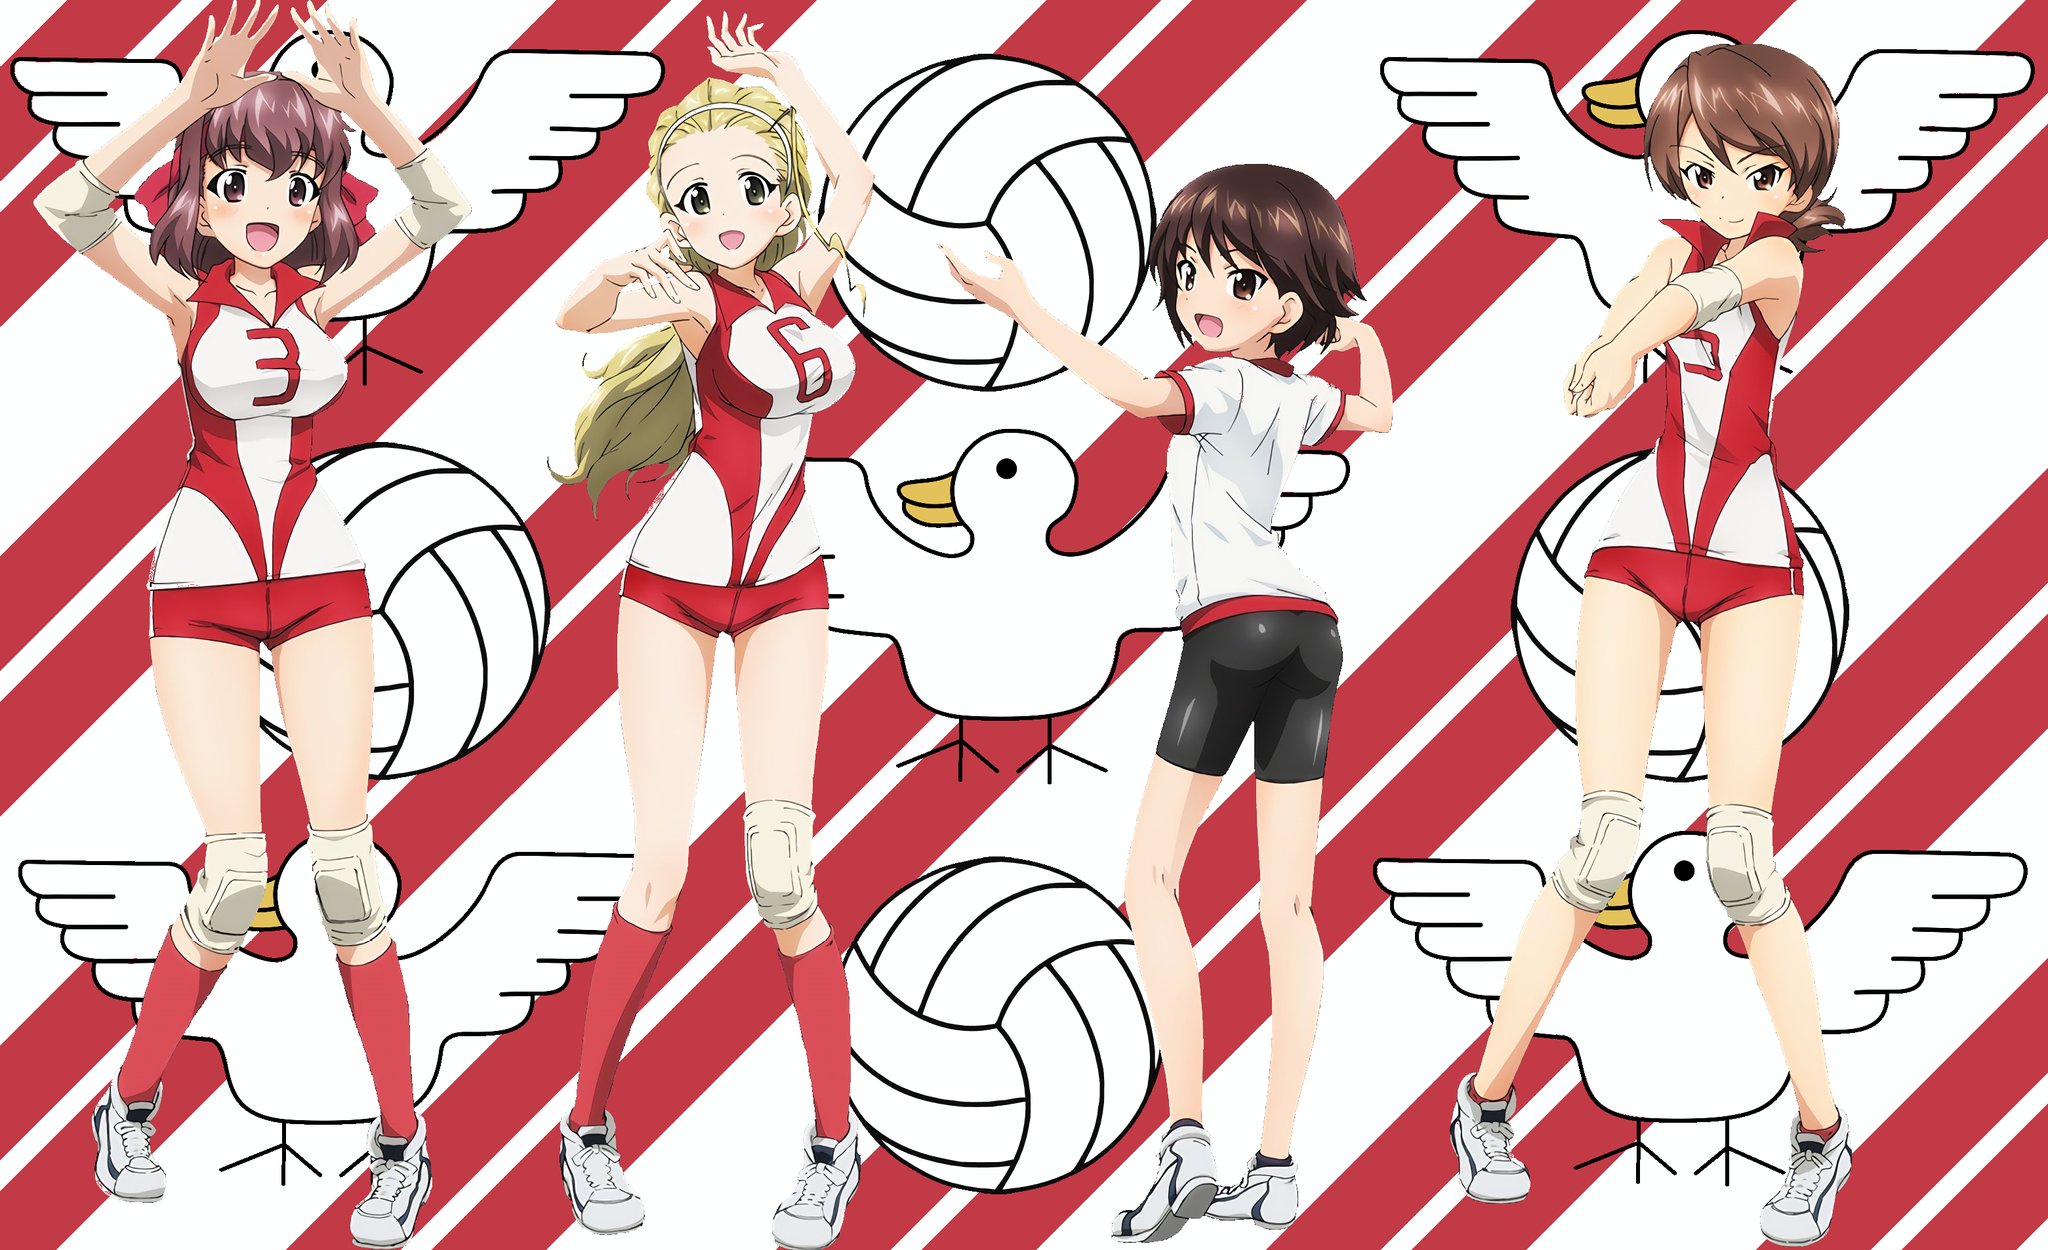 スイス桃 Ceo Of Anime Booba Yeah I Remember Learning About That From Girls Und Panzer After People Where Wondering Why One Of The Volleyball Team Members Is Noticeably Shorter And